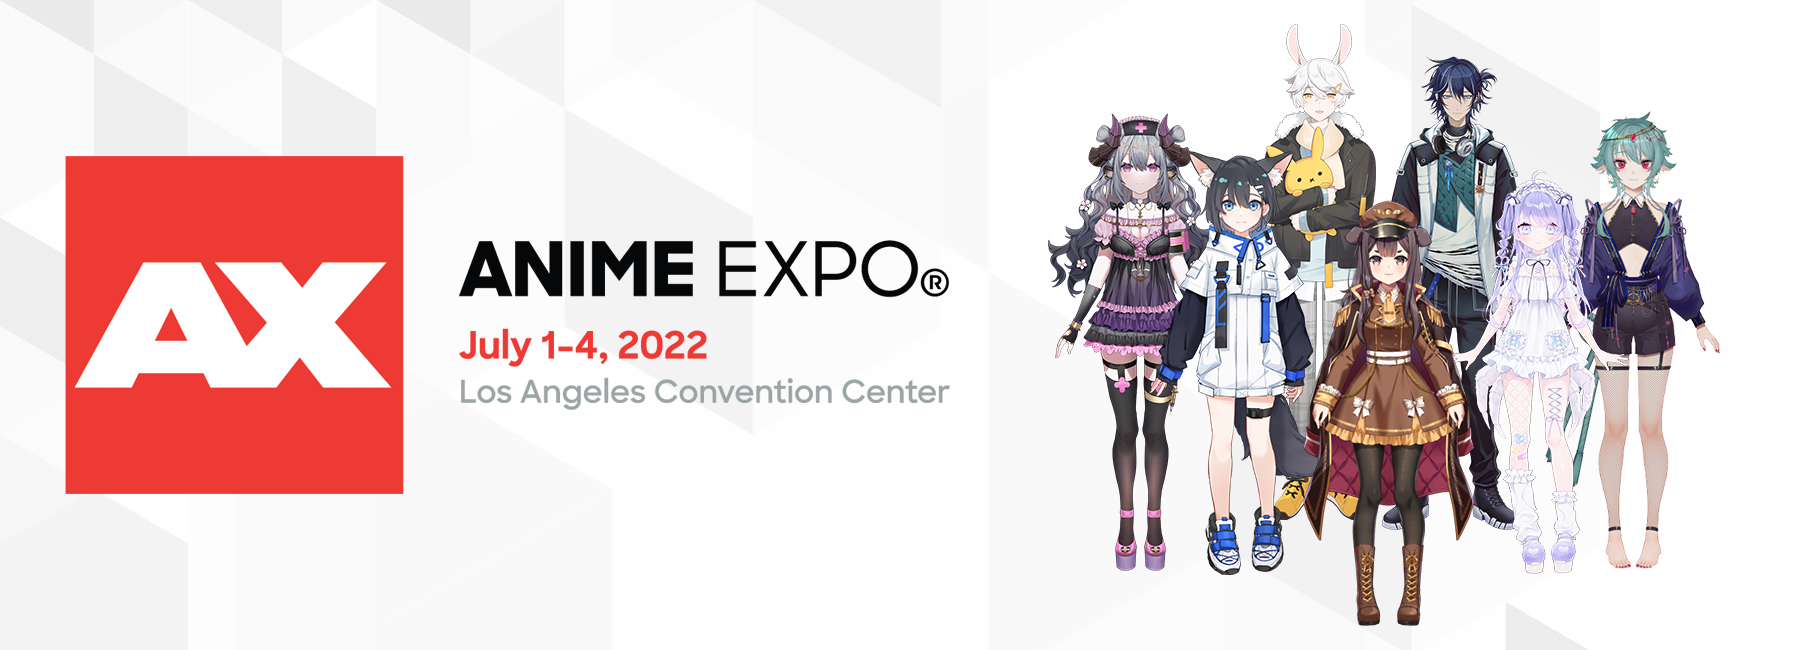 Tsunderia will be at Anime Expo!